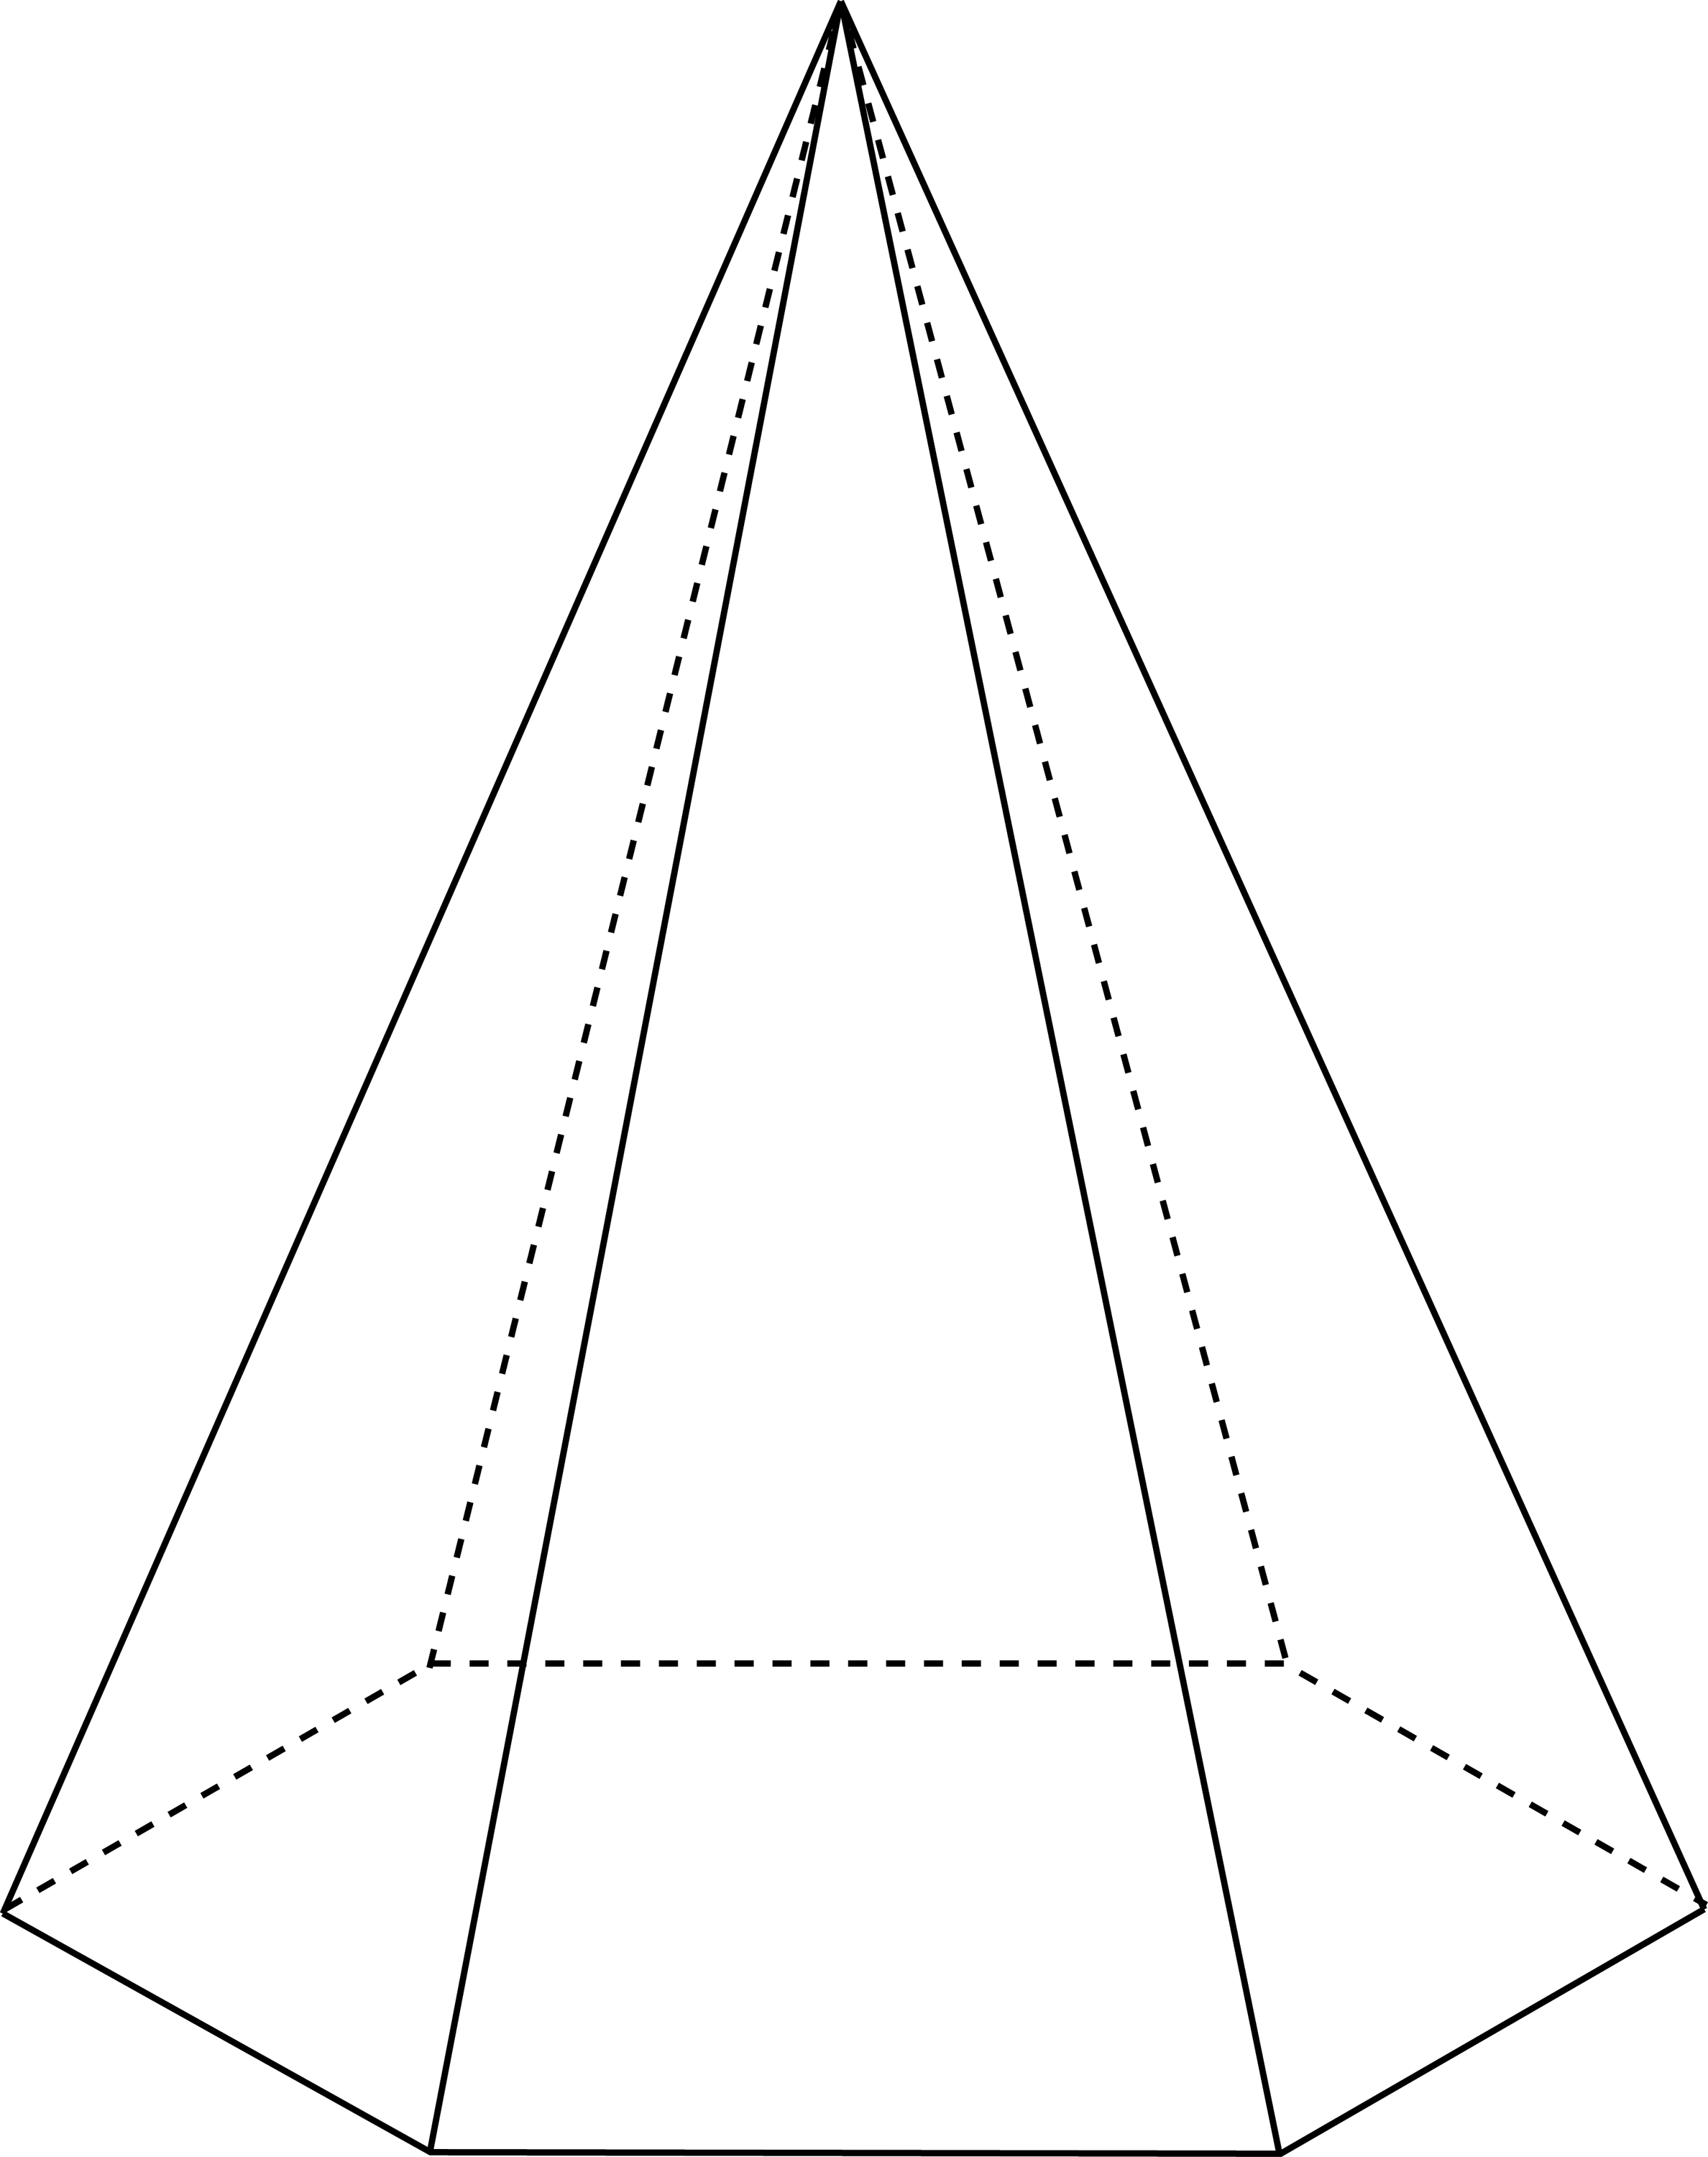 Правильная шести уголная пирамида